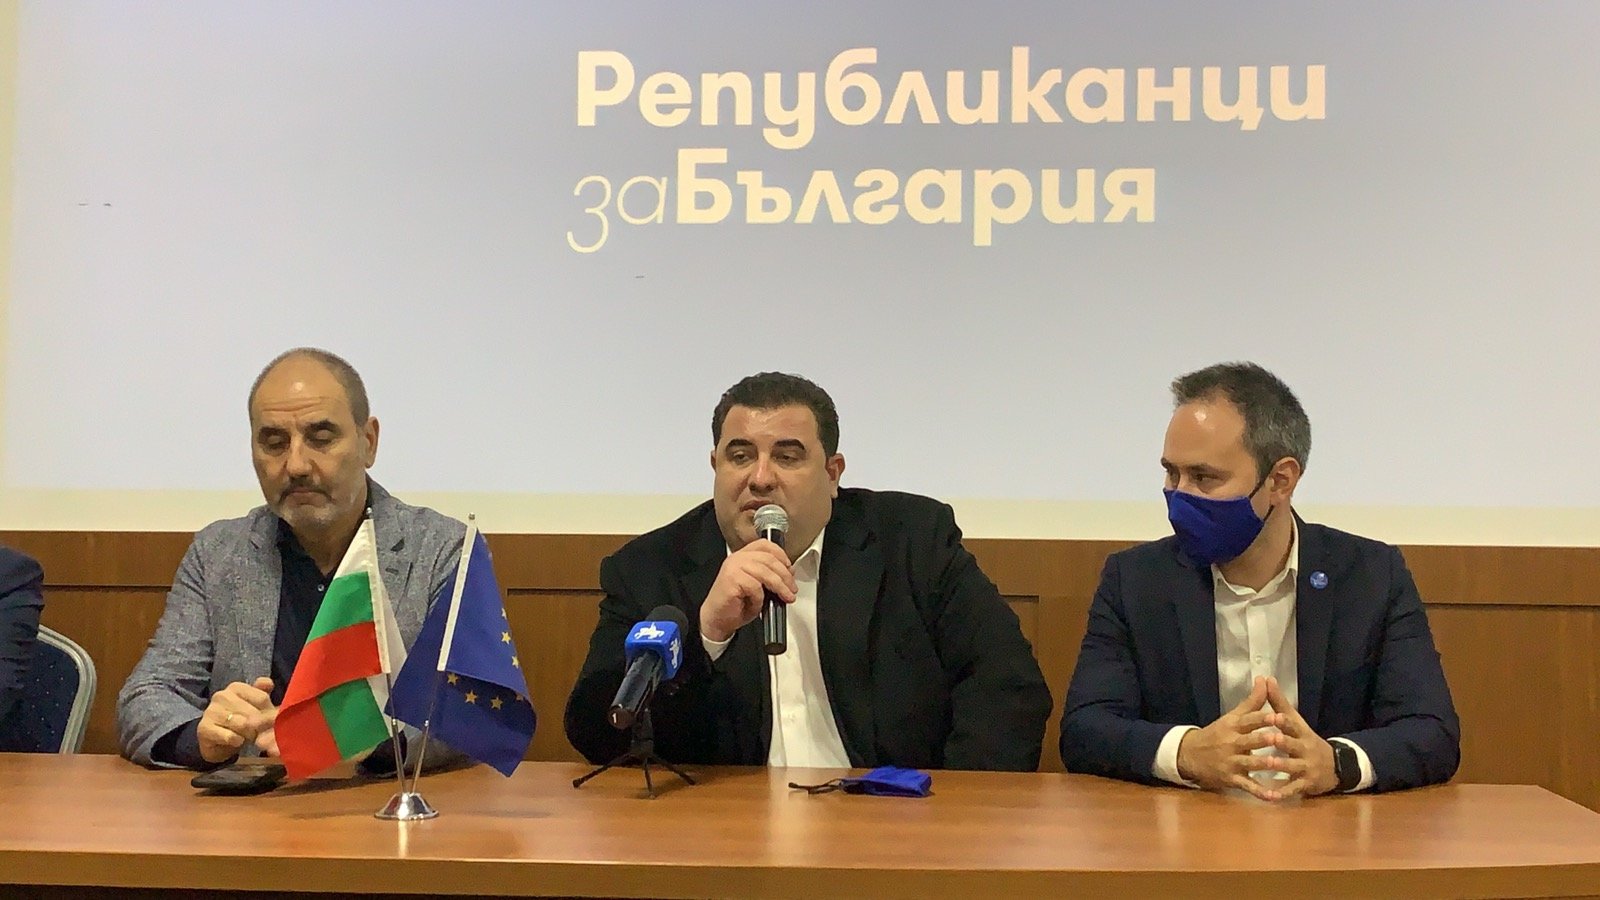 Републиканци за България ще работят за промяна във всеки един